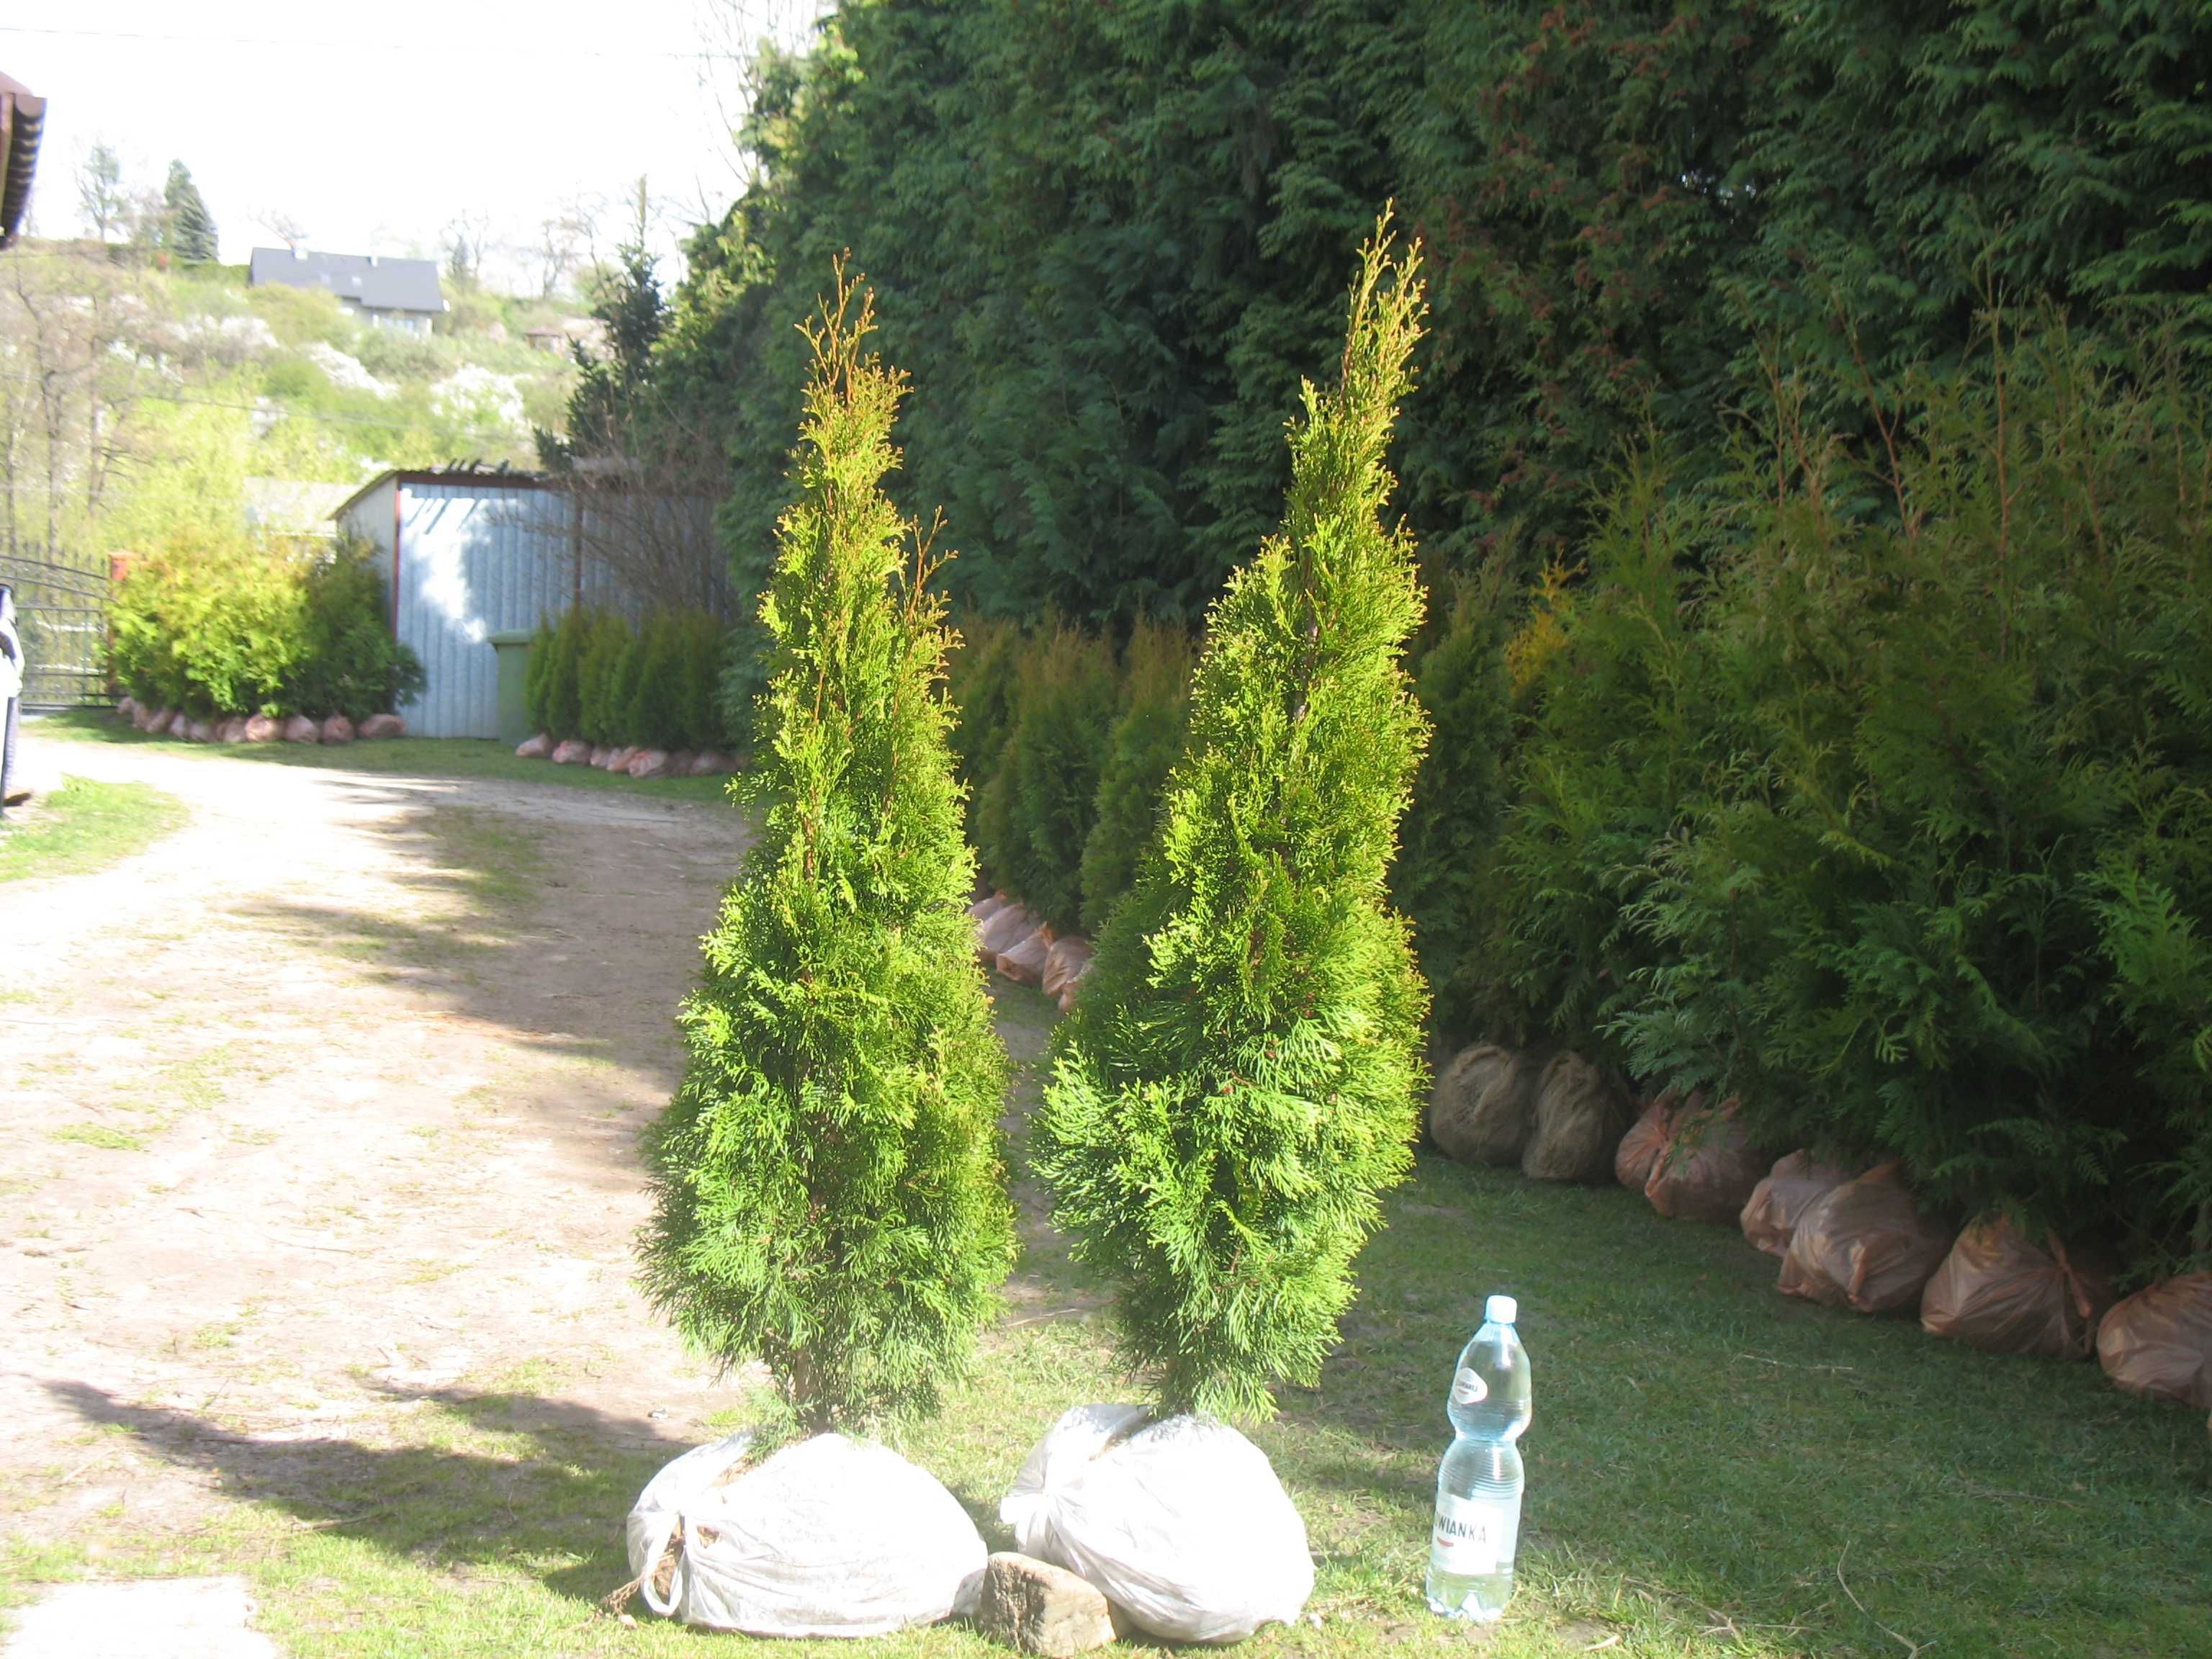 Tuja szmaragd 160 cm, smaragd, tuje, thuja, krzewy ozdobne, iglaki